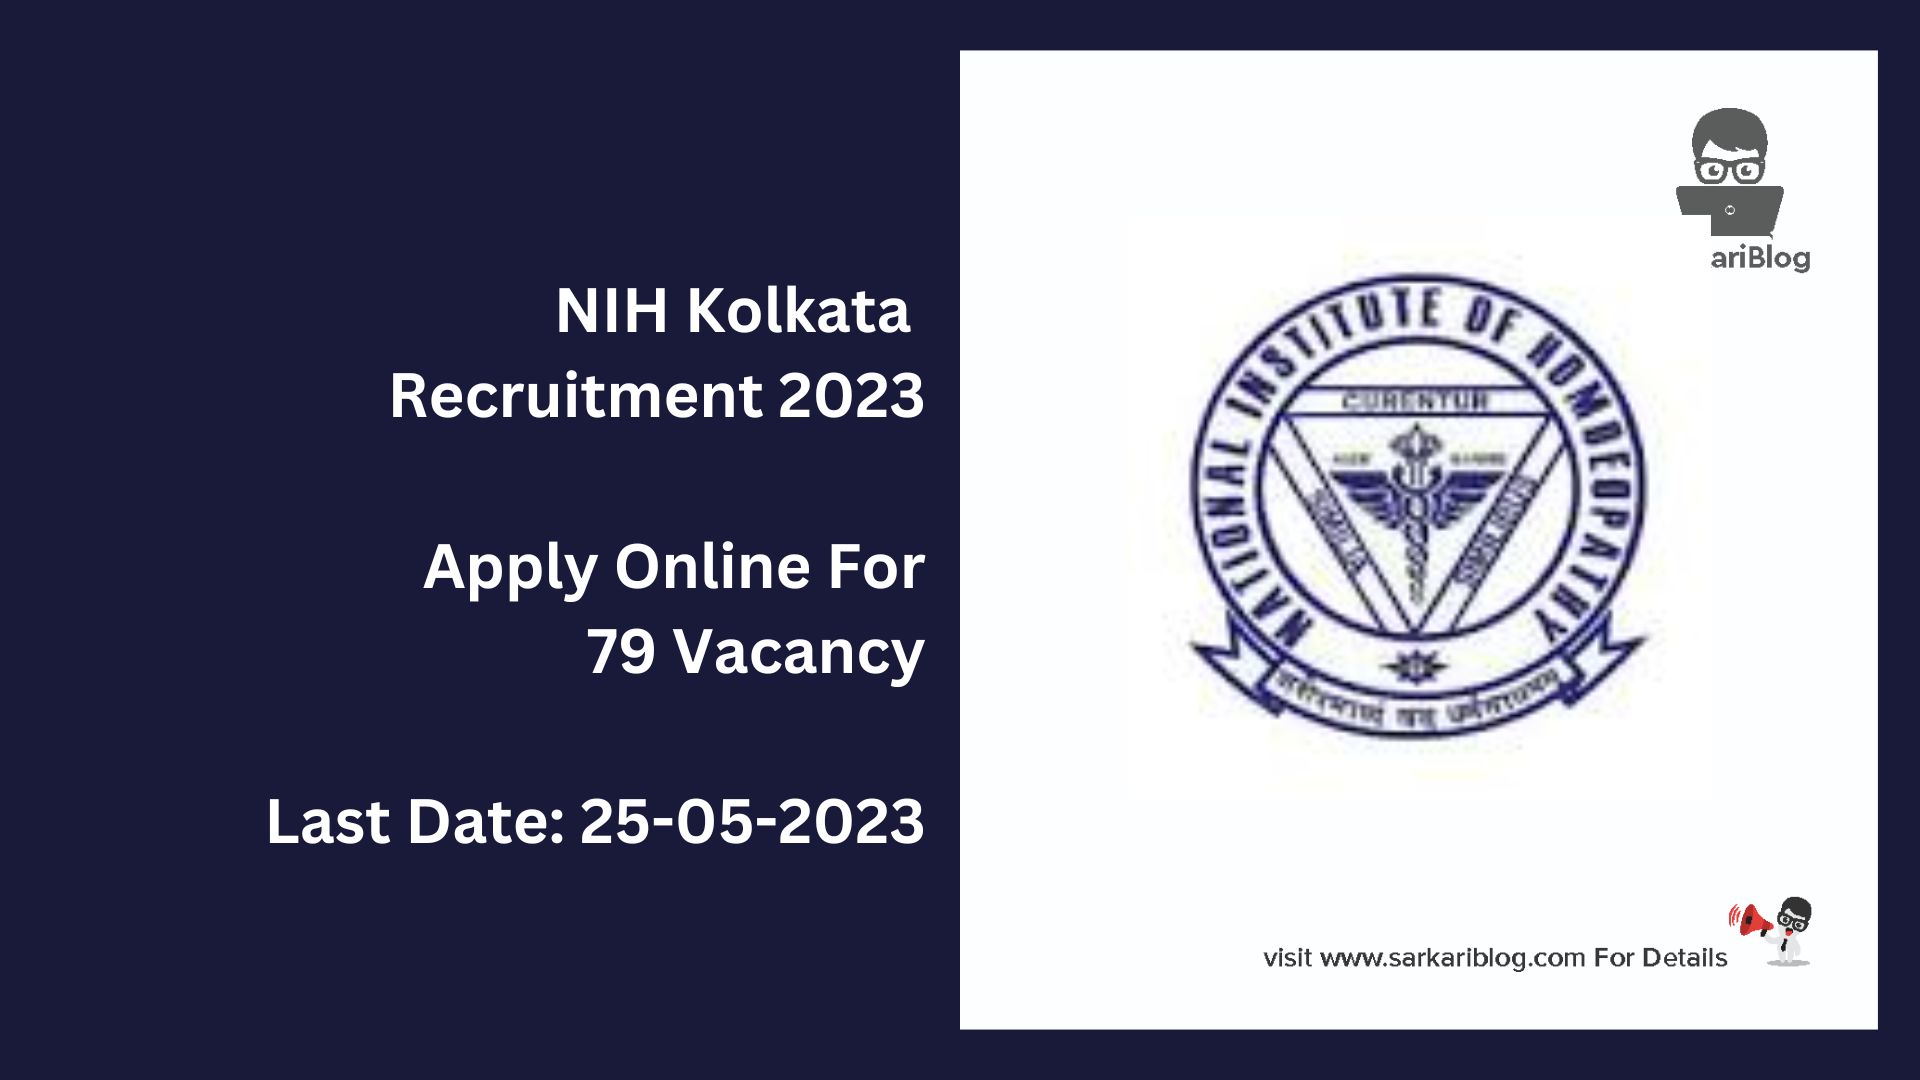 NIH Kolkata Recruitment 2023